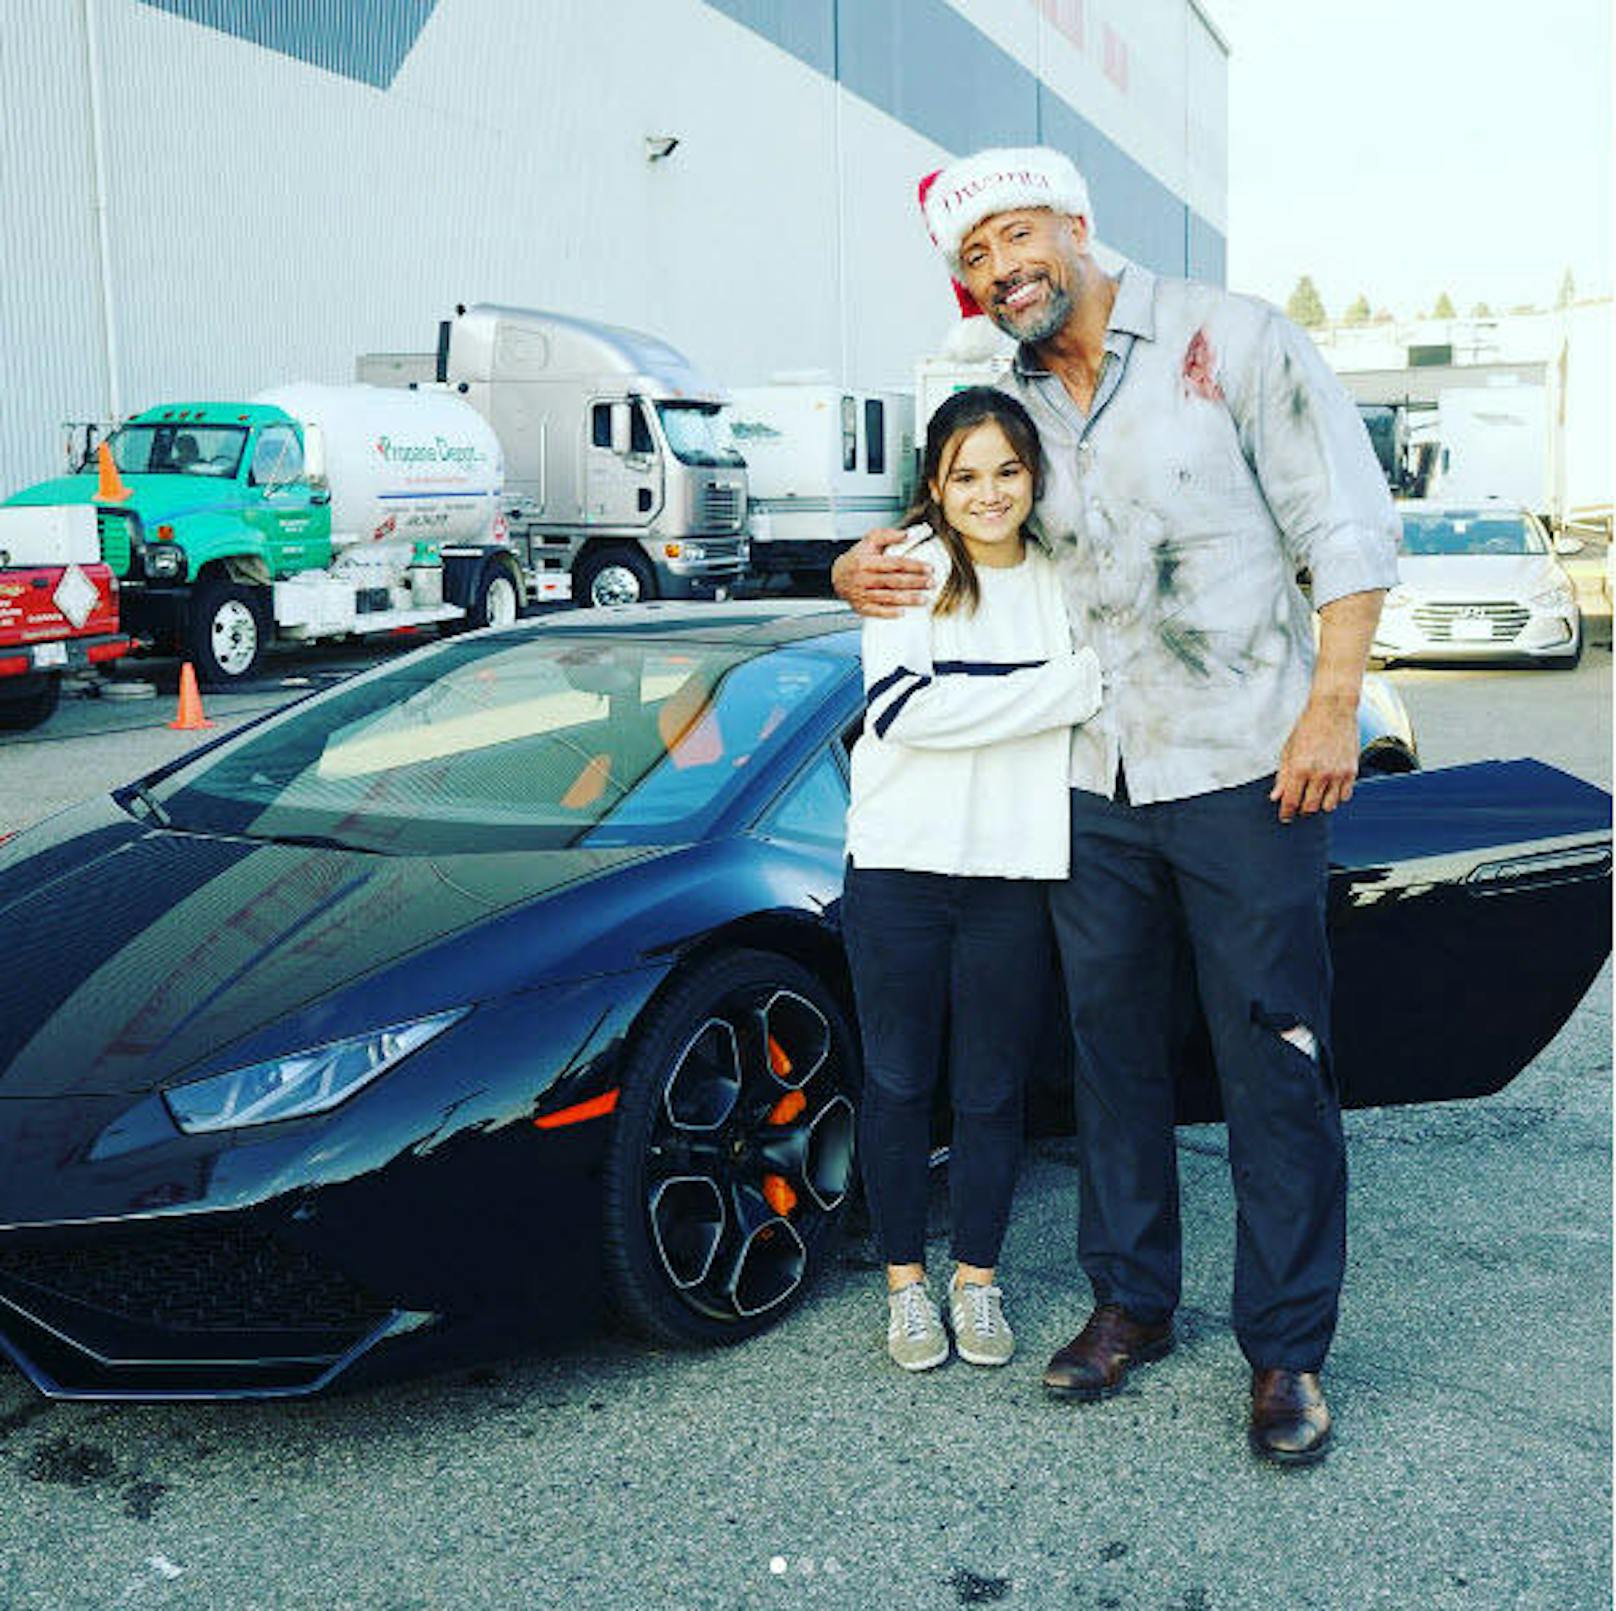 4.11.2017: Für "Make A Wish" cruiste Dwayne "The Rock" Johnson mit drei jungen Fans in einem Lamborghini durch die Stadt.